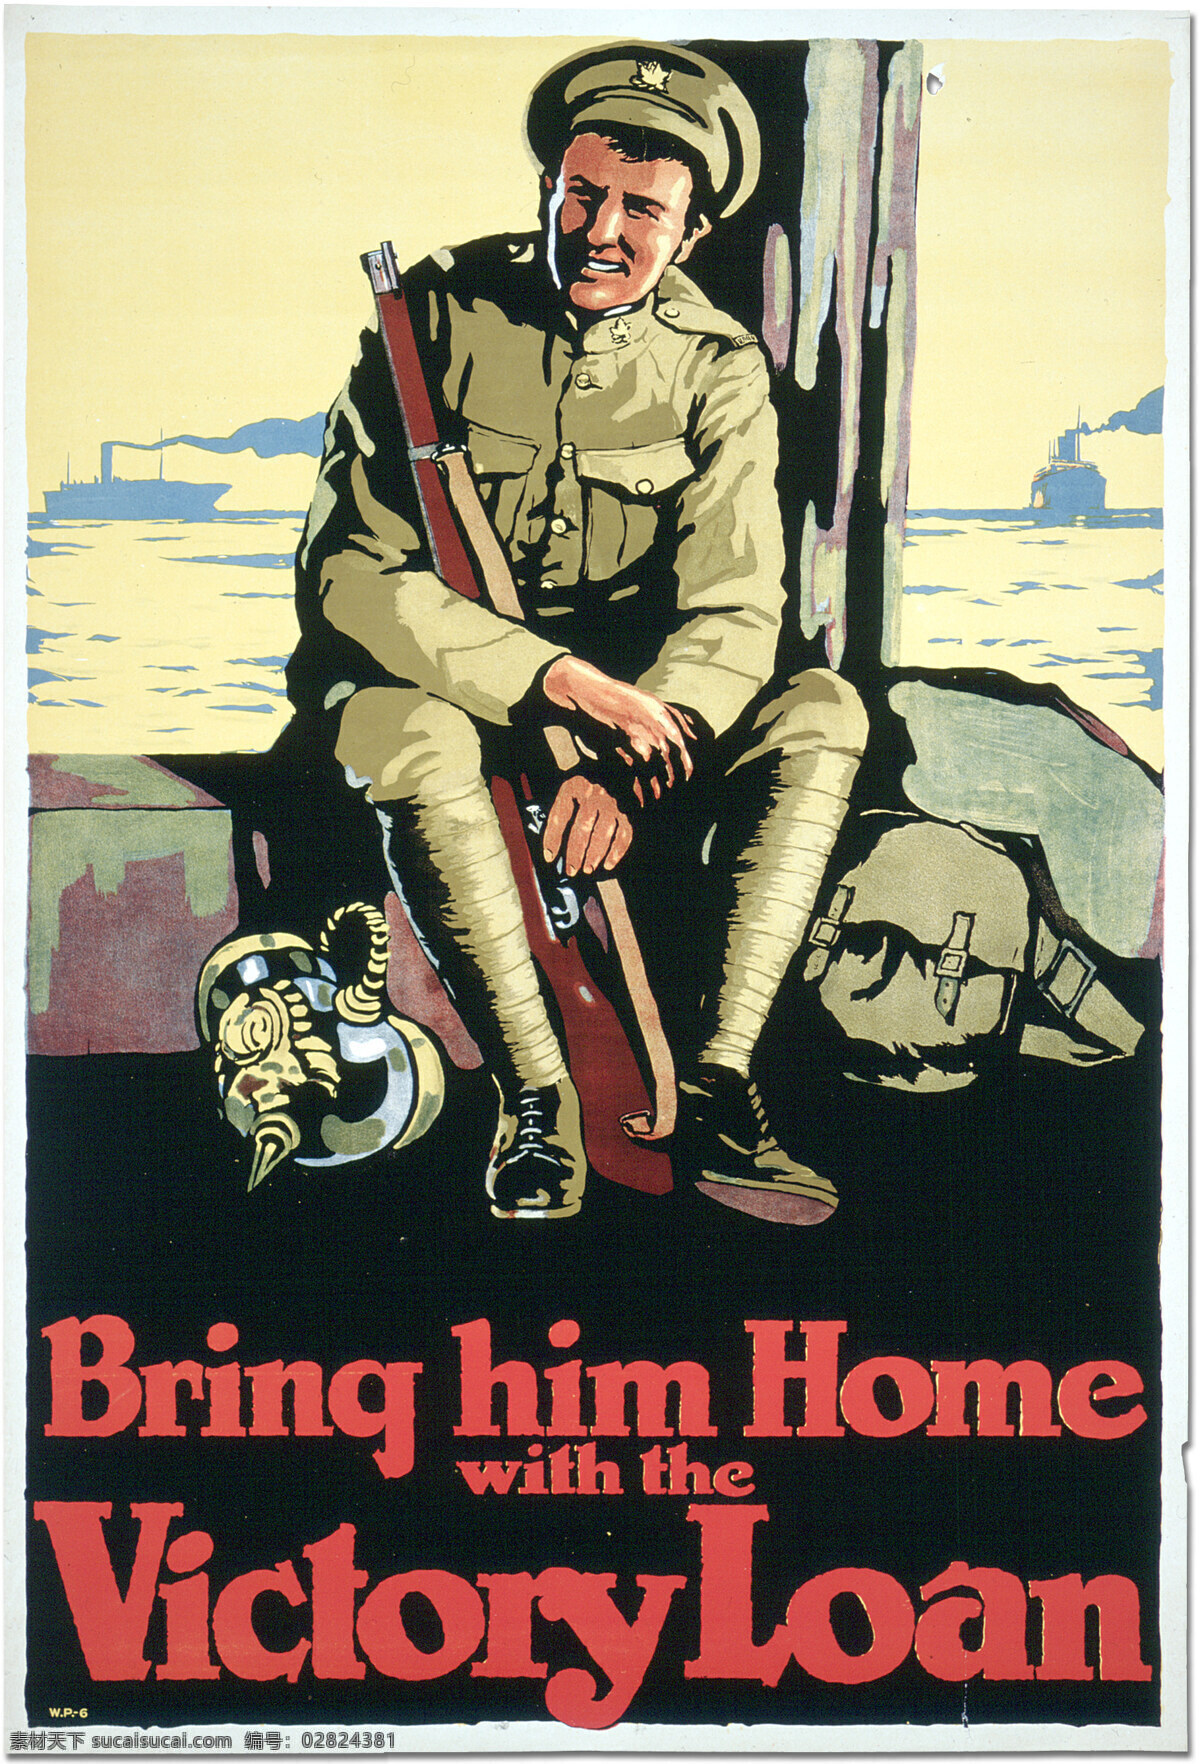 防毒面具 和平 回家 加拿大 设计图库 希望 宣传画 1918 年 战争 海报 1918年 第一次世界大战 战士 招贴设计 其他海报设计